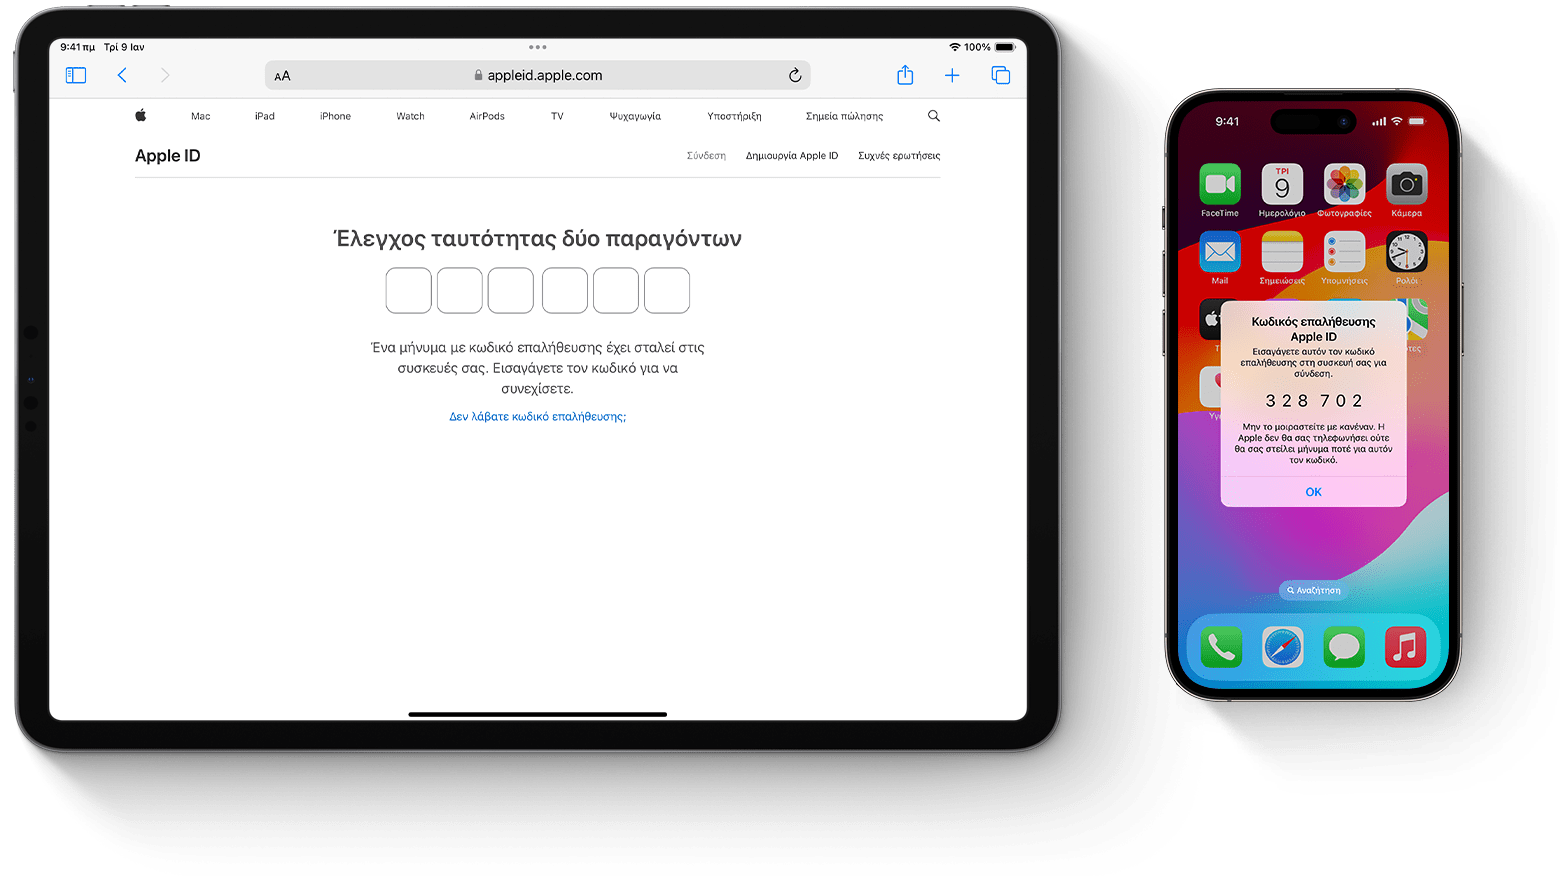 Η οθόνη ενός iPad και ενός iPhone στην οποία εμφανίζονται μηνύματα του ελέγχου ταυτότητας δύο παραγόντων